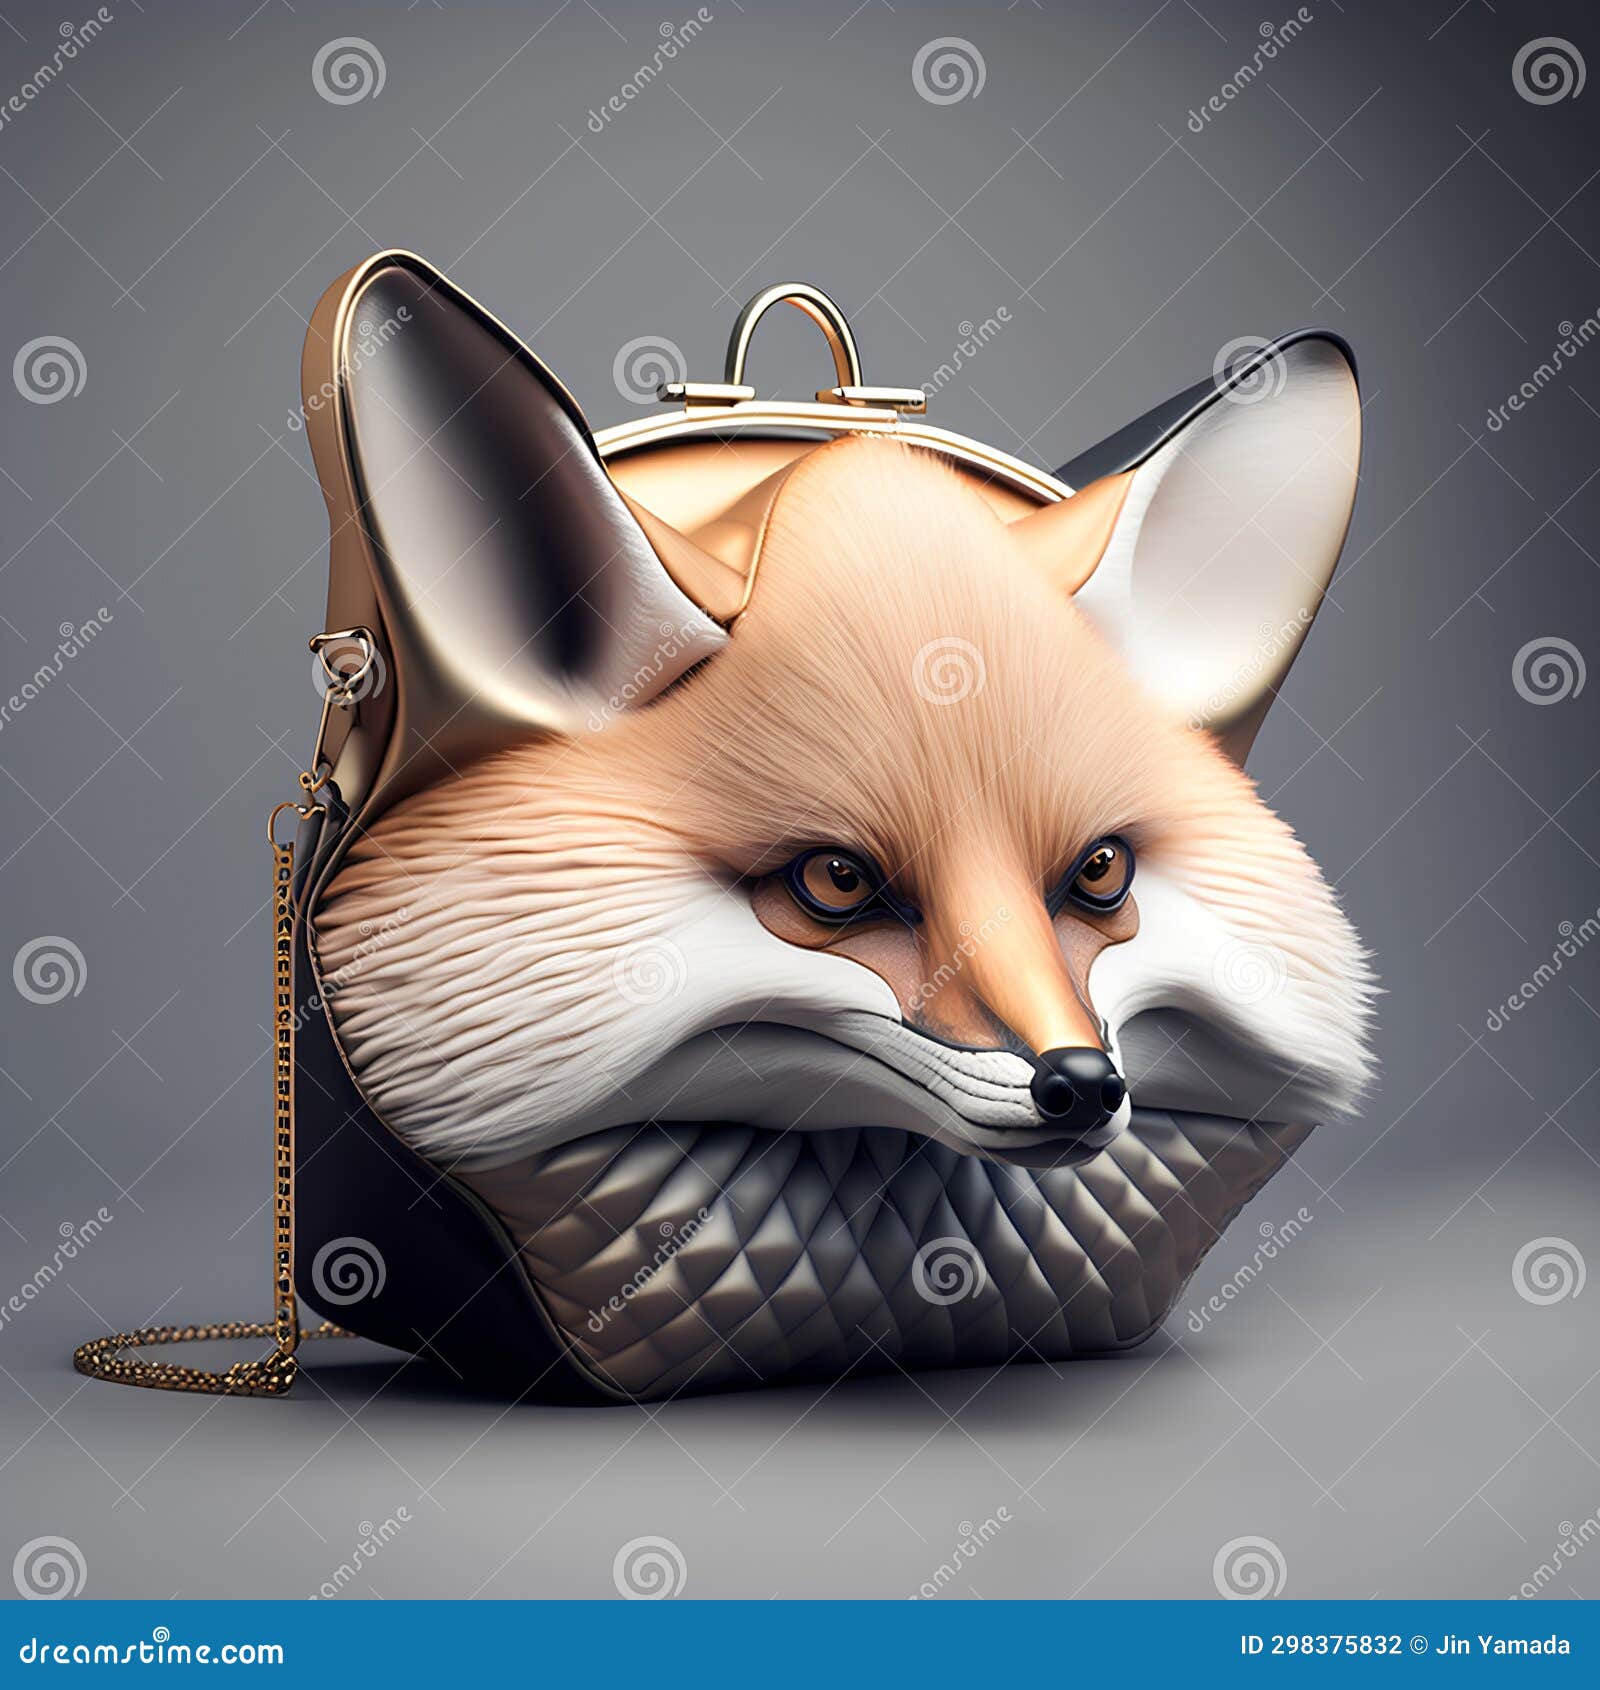 Yoshi Fox head coin purse w dust bag | eBay